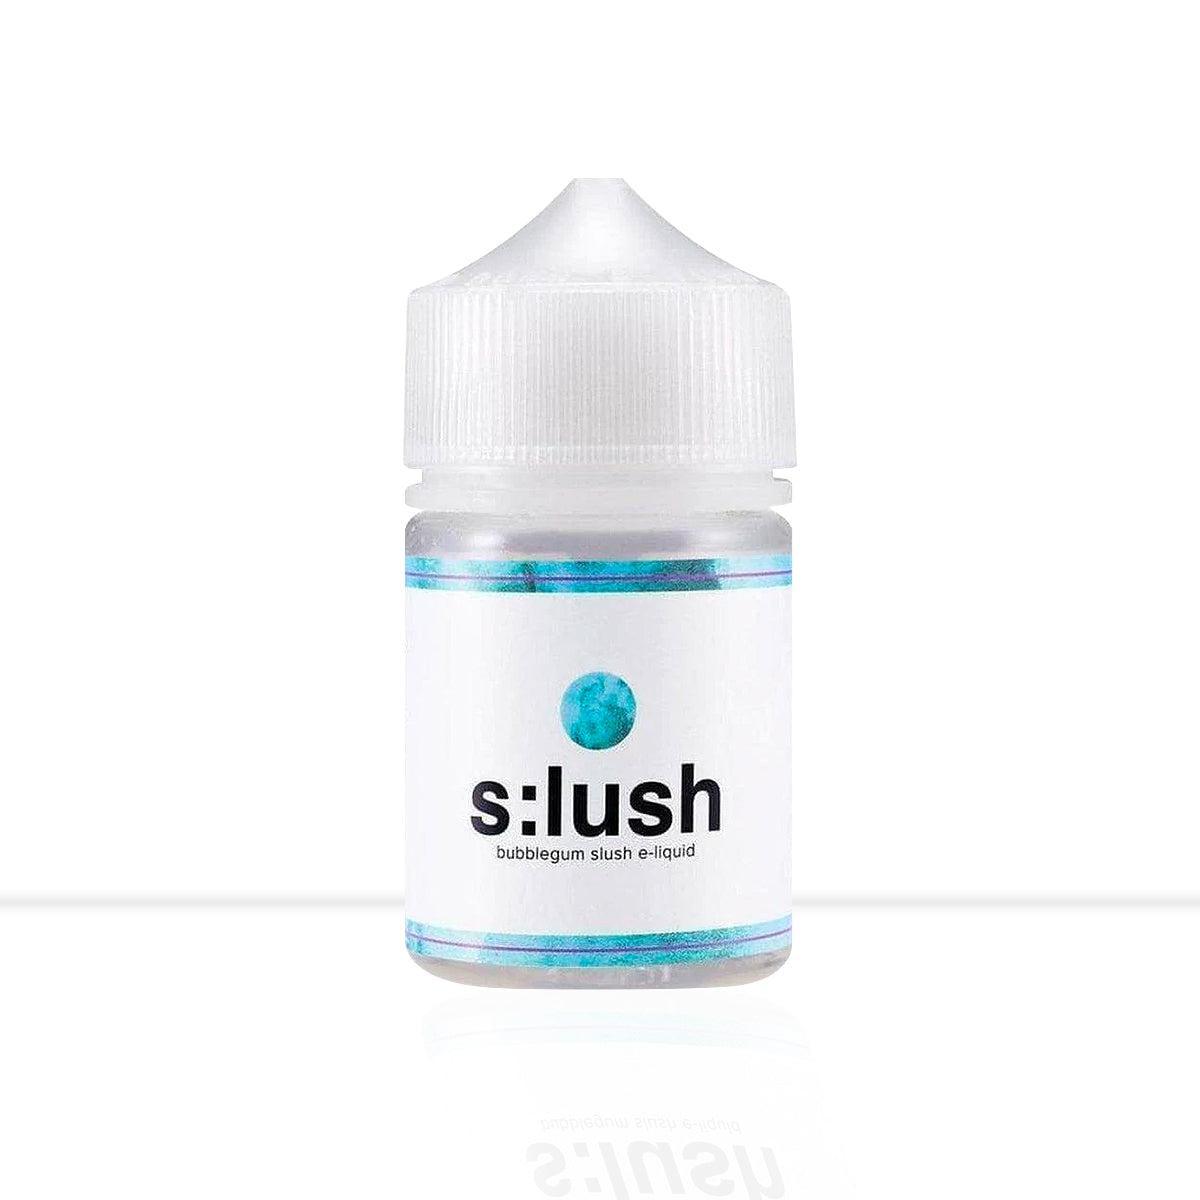 Bubblegum Slush Shortfill E-Liquid S:LUSH - Bubblegum Slush Shortfill E-Liquid S:LUSH - E Liquid